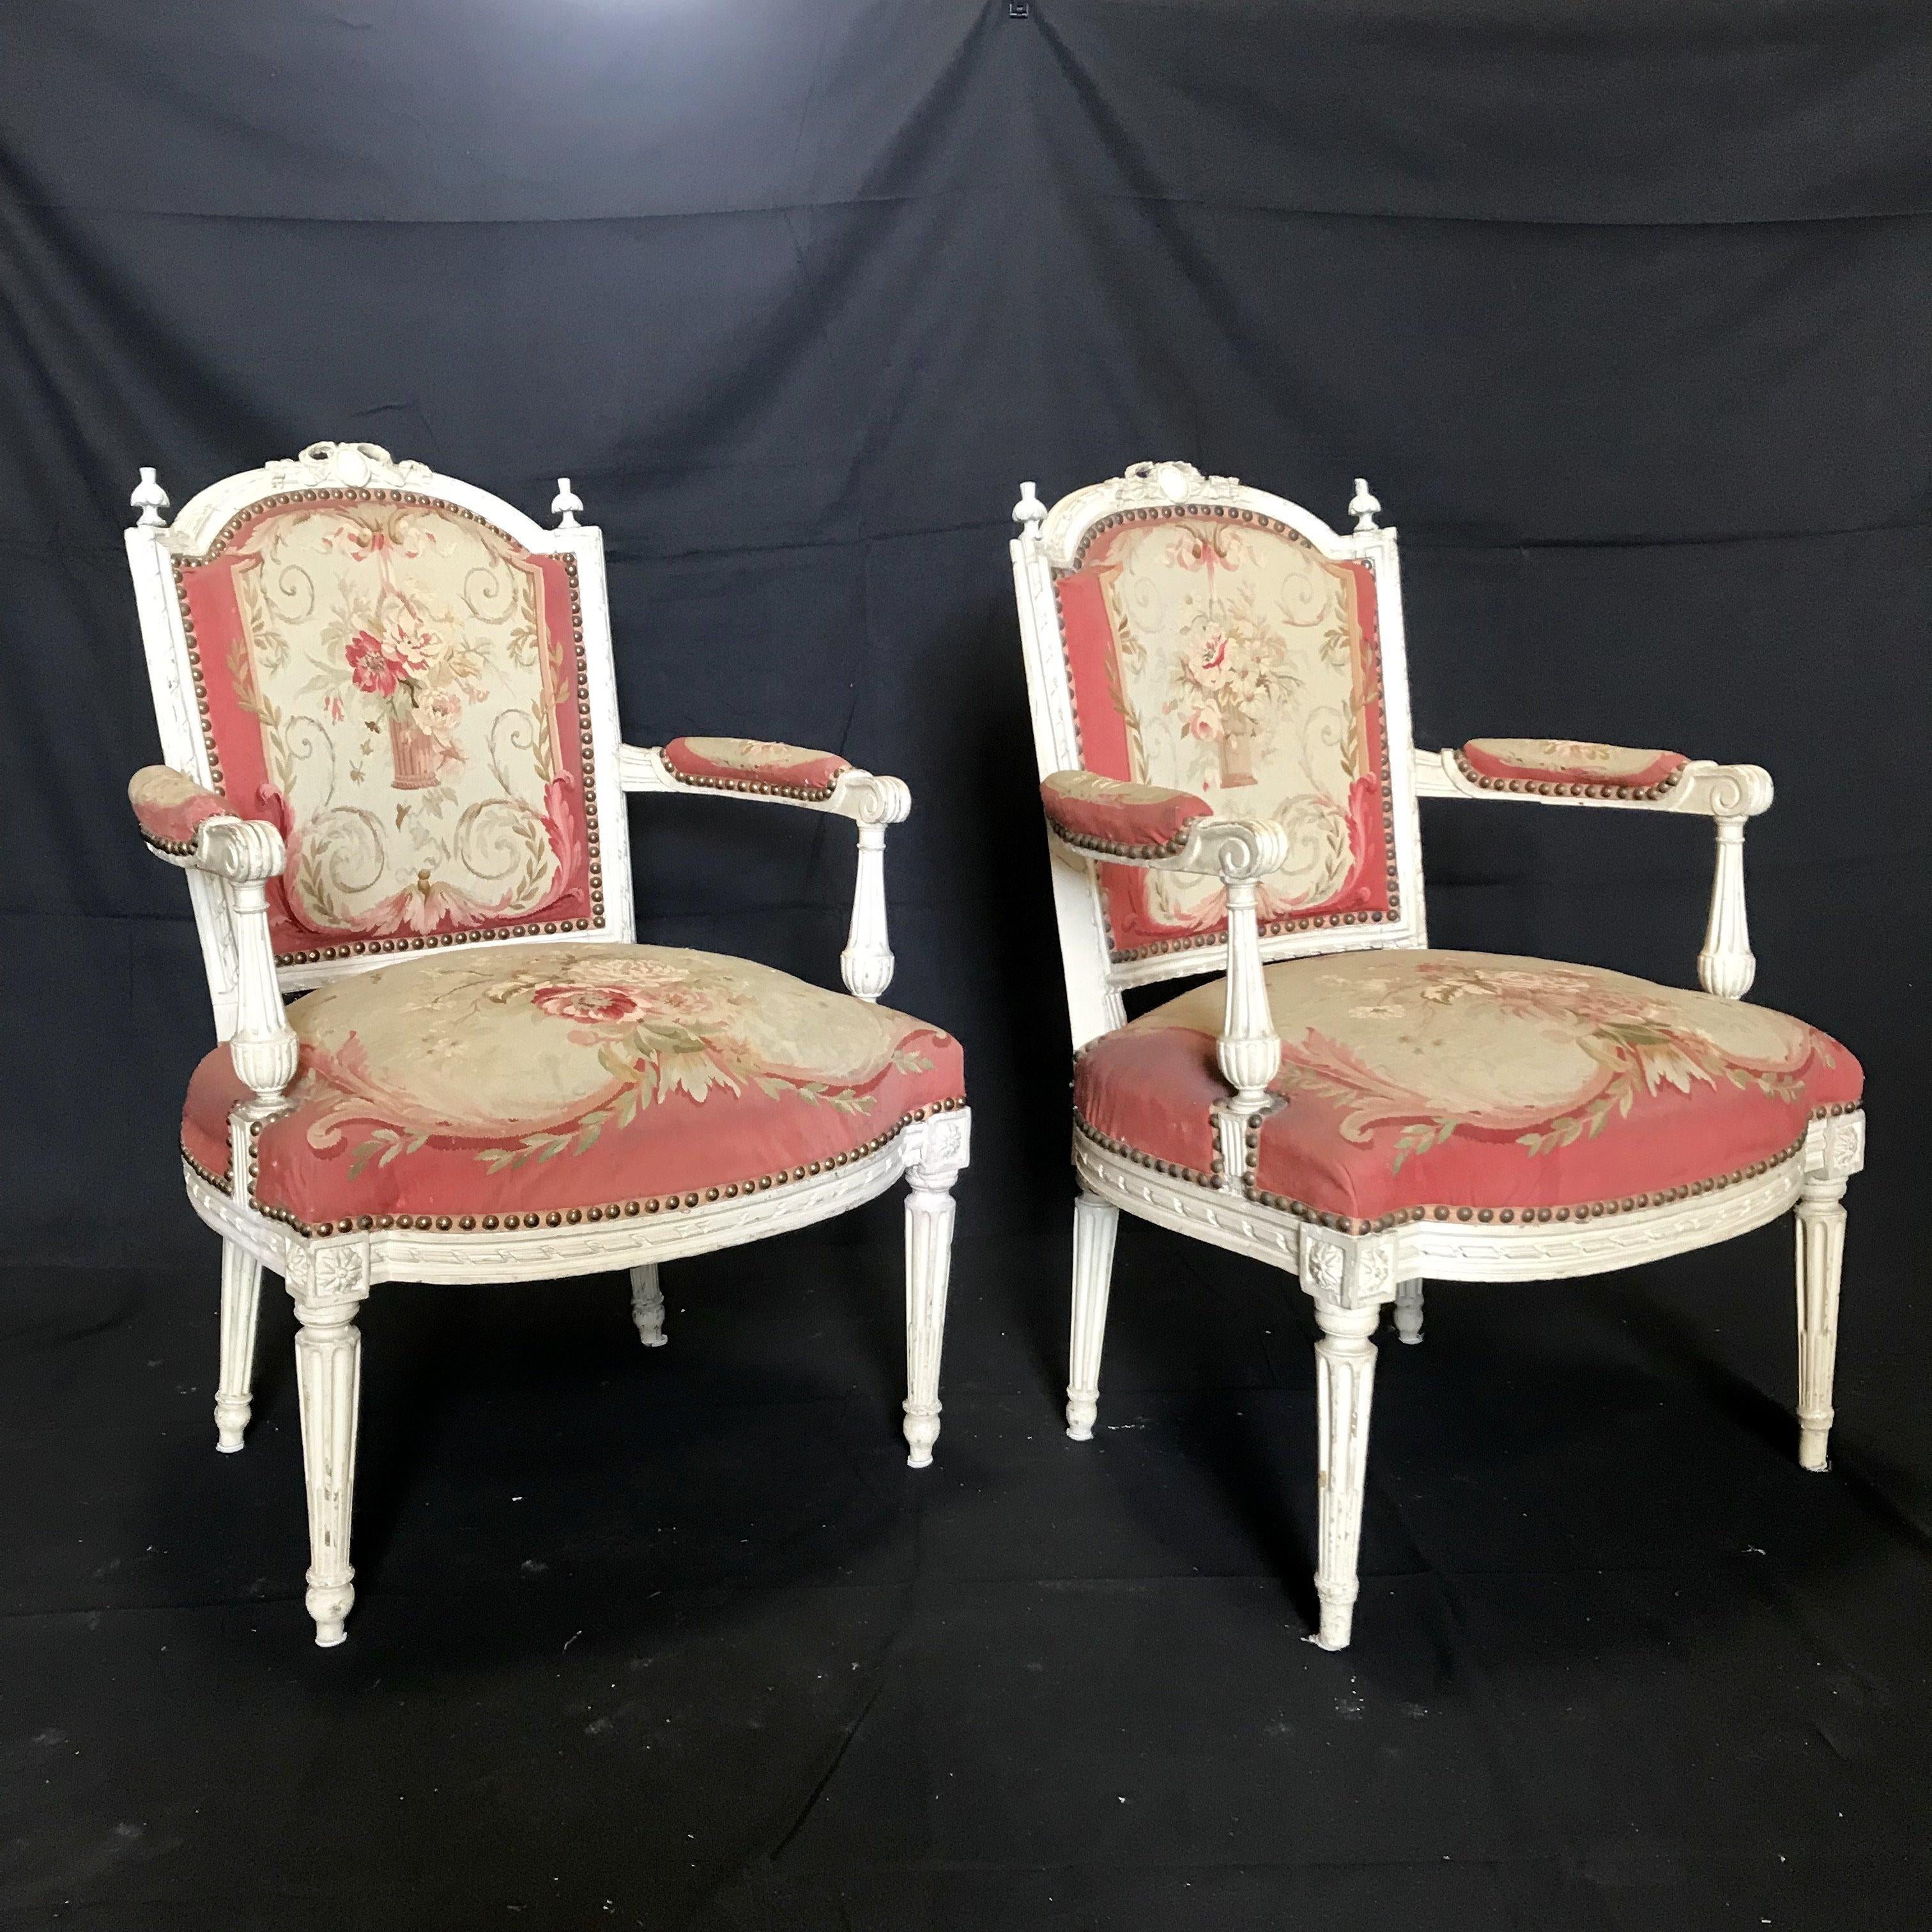 Zwei der schönsten französischen Fauteuil-Stühle, die wir je gesehen haben, mit kunstvoll geschnitzten und bemalten Holzrahmen und originalen Aubusson-Polstern mit Rosshaarfüllung und Federn. Das himbeer-, creme- und zartgrüne Blumenmuster ist mit